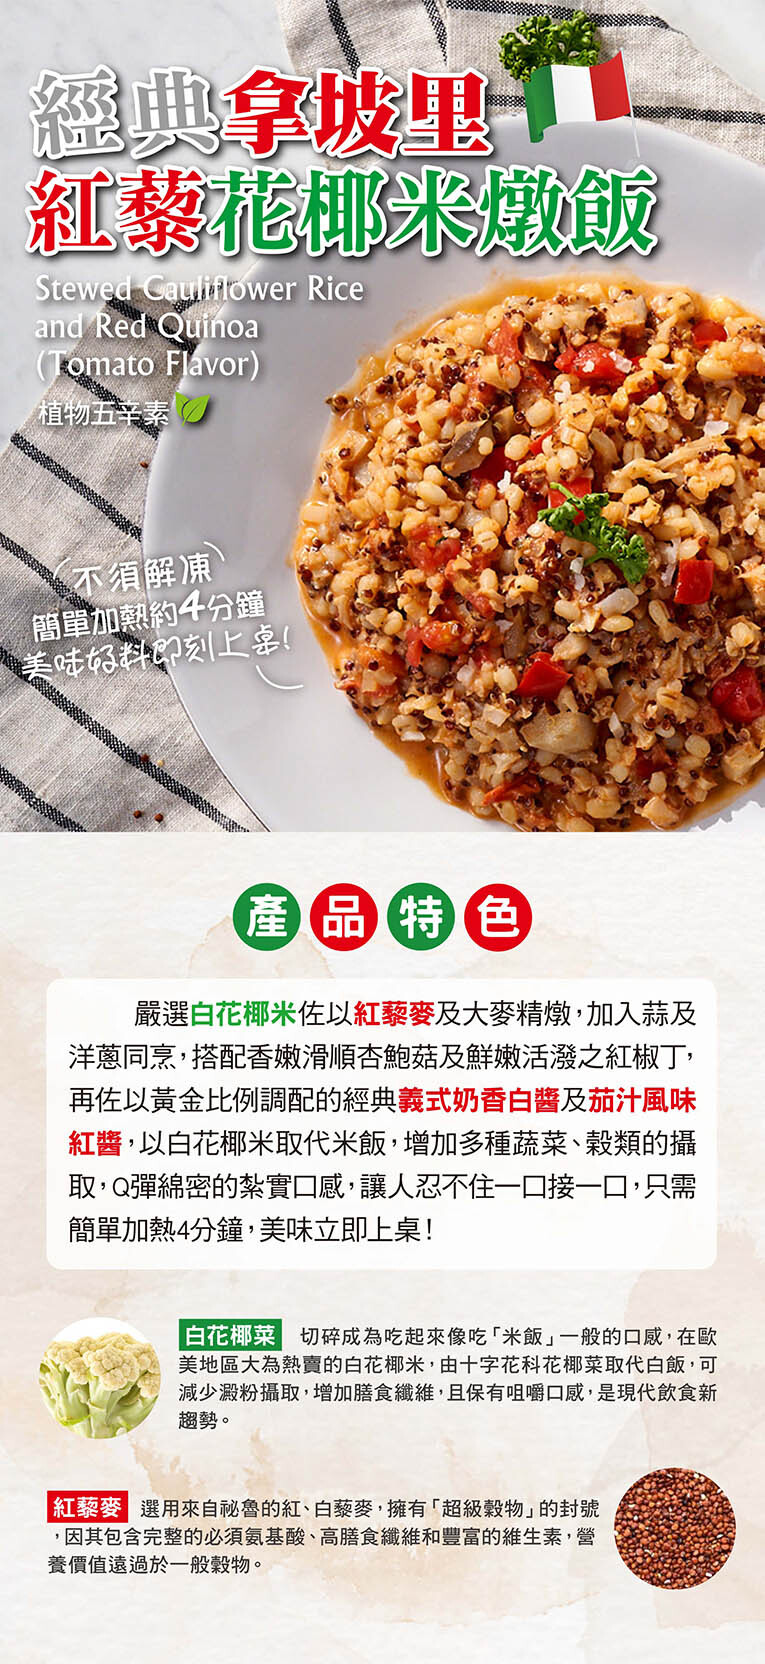 10019601-2-經典拿坡里紅藜花椰米燉飯